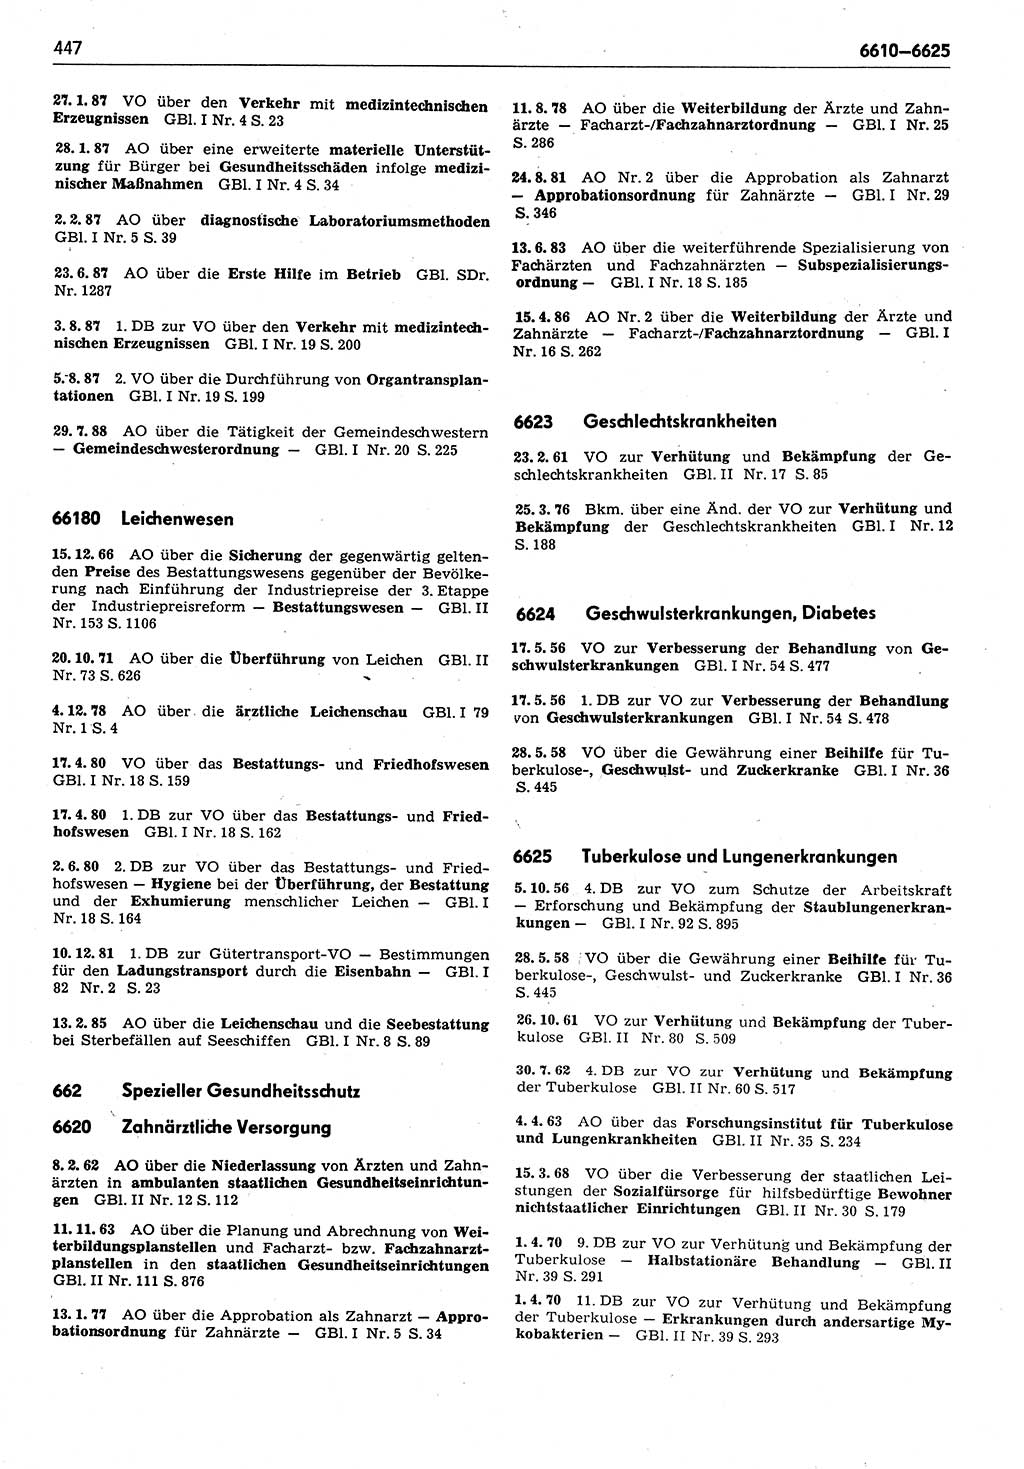 Das geltende Recht der Deutschen Demokratischen Republik (DDR) 1949-1988, Seite 447 (Gelt. R. DDR 1949-1988, S. 447)